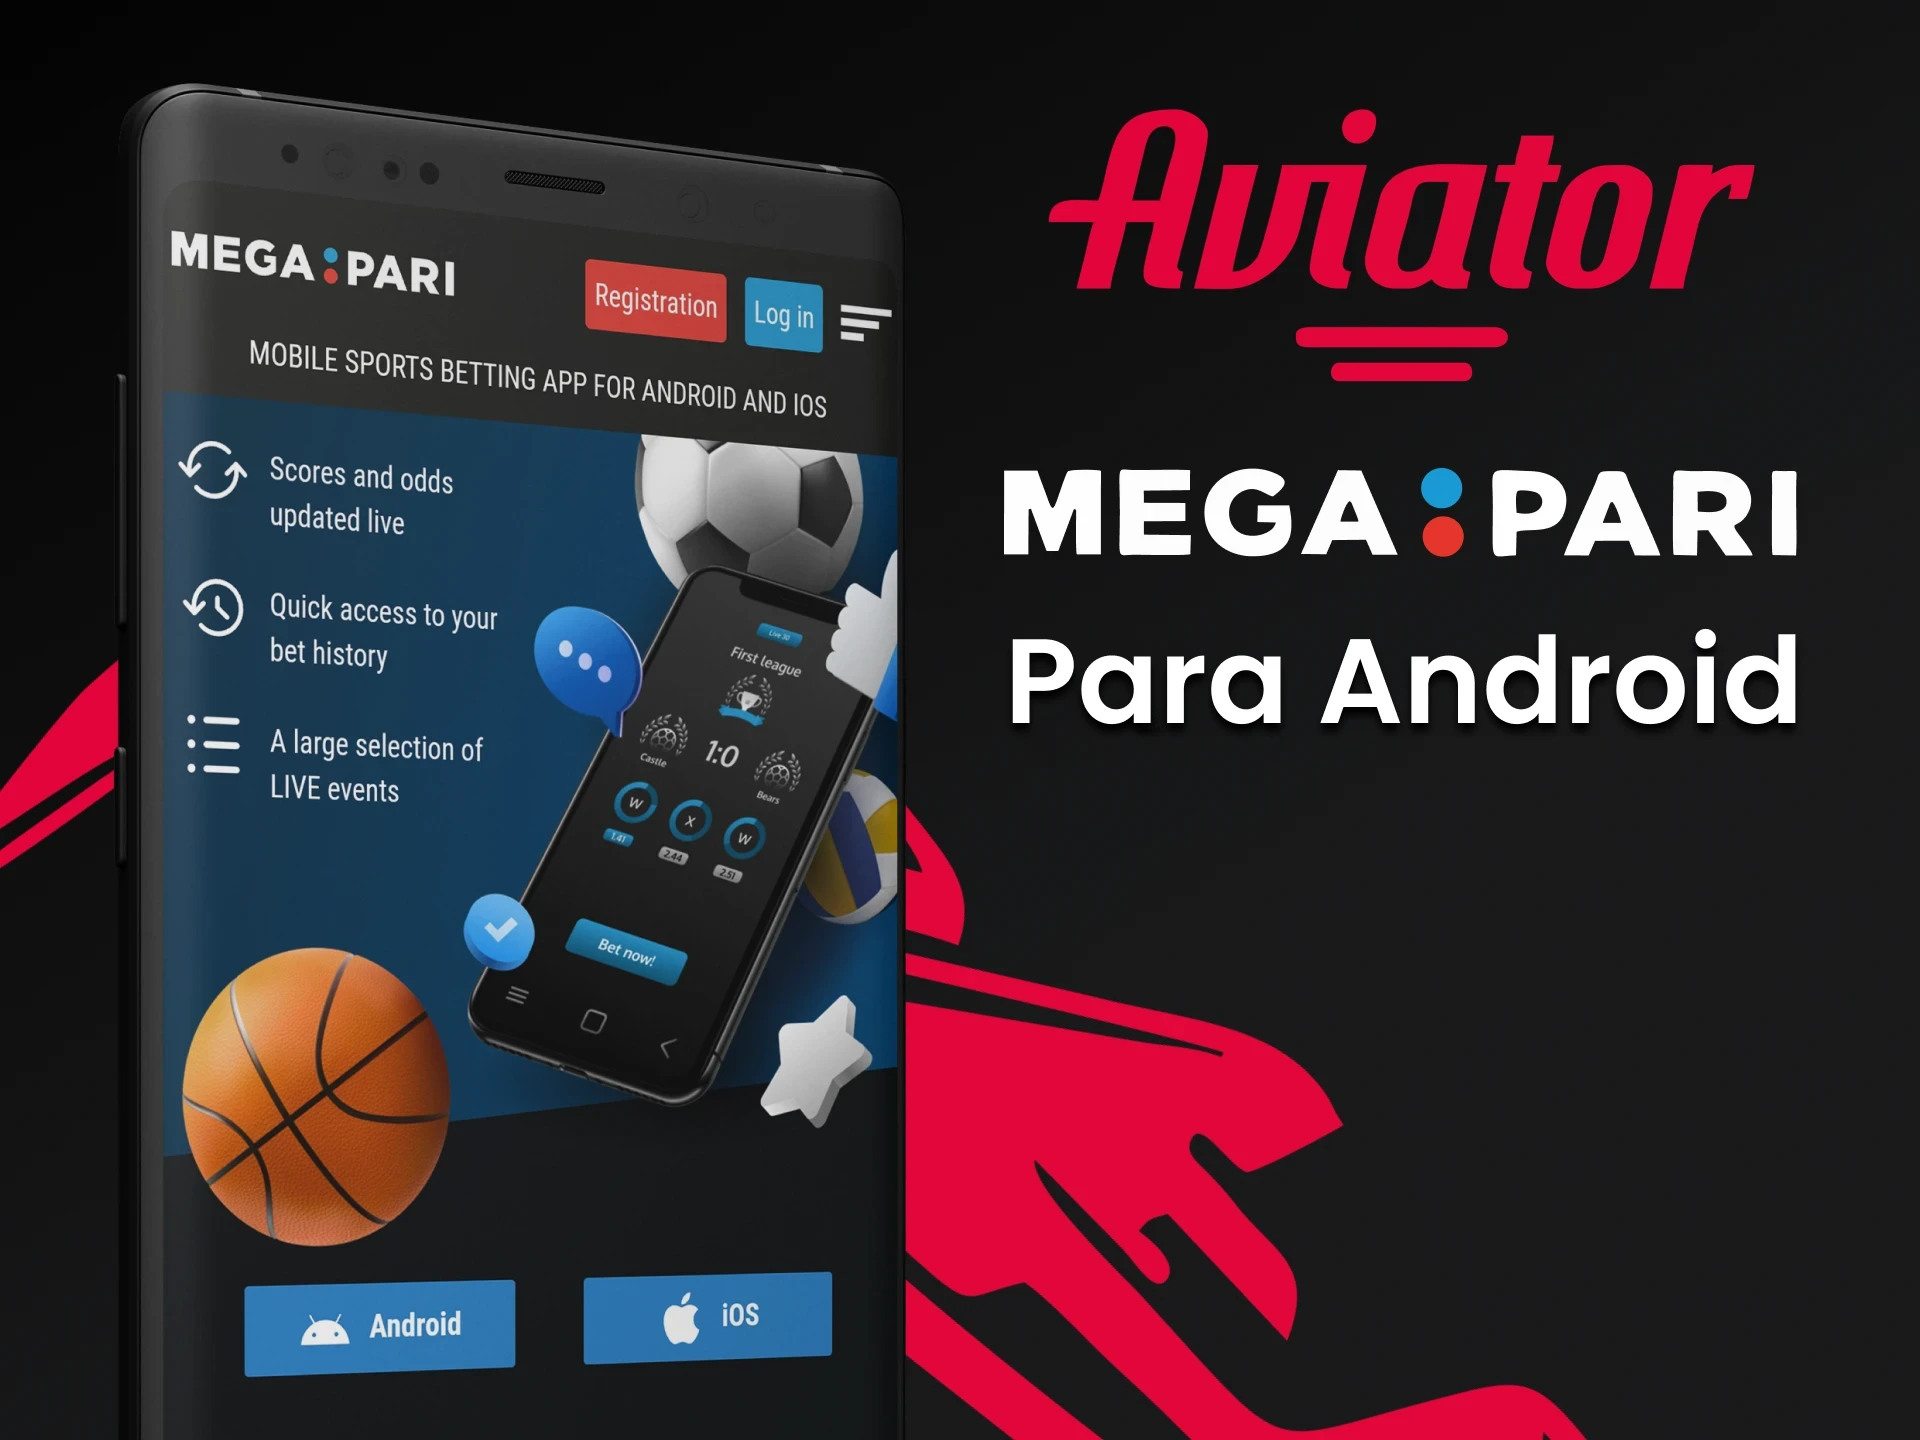 Baixe o aplicativo Megapari para Android para jogar Aviator.